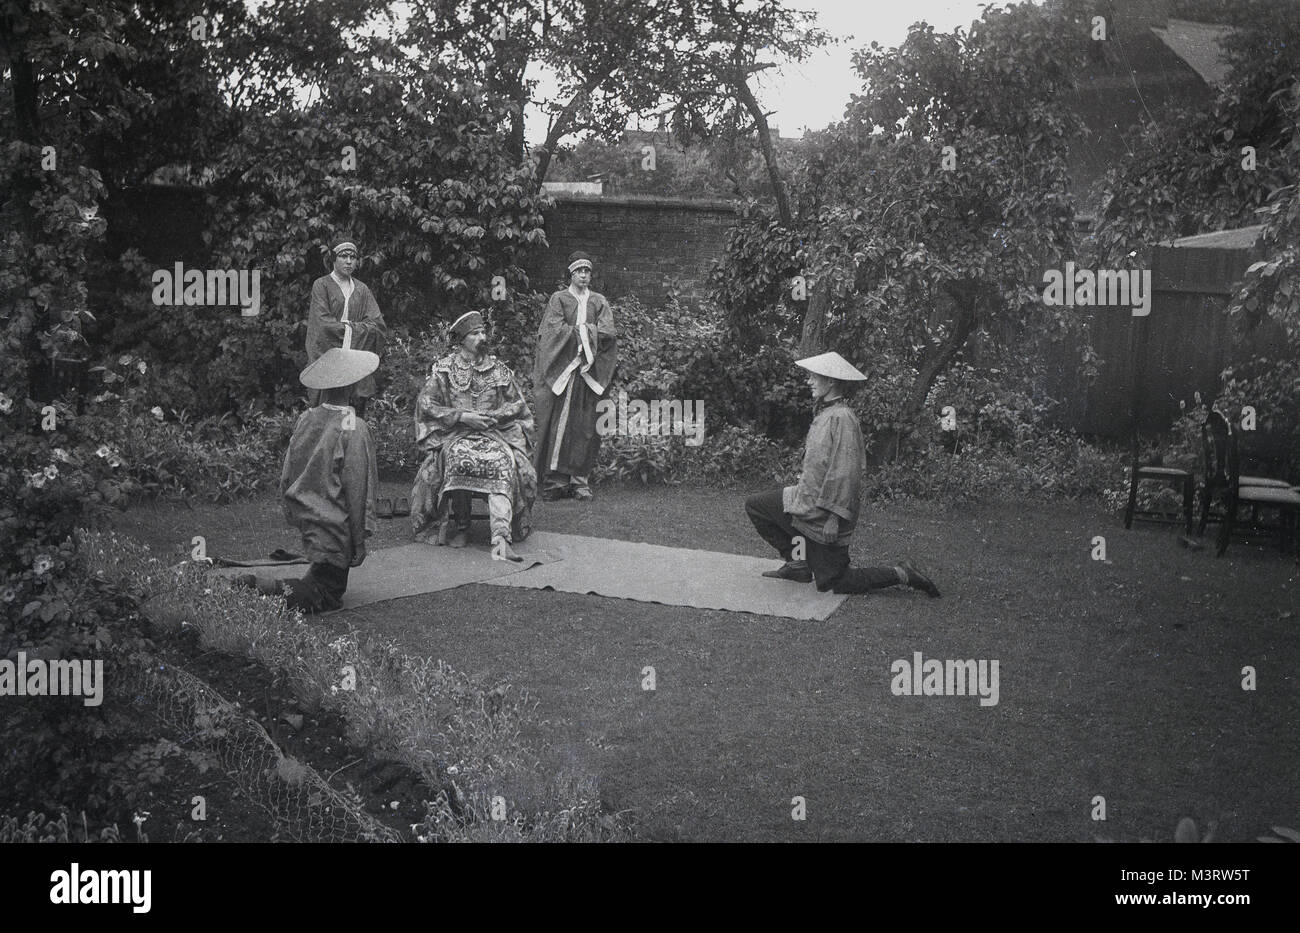 Années 1930, historique, un petit groupe de jeunes gens habillés en costumes orientaux ou chinois et portant des chapeaux de soleil ou du riz, de l'exécution d'un jouer dans un jardin de banlieue, England, UK. Banque D'Images